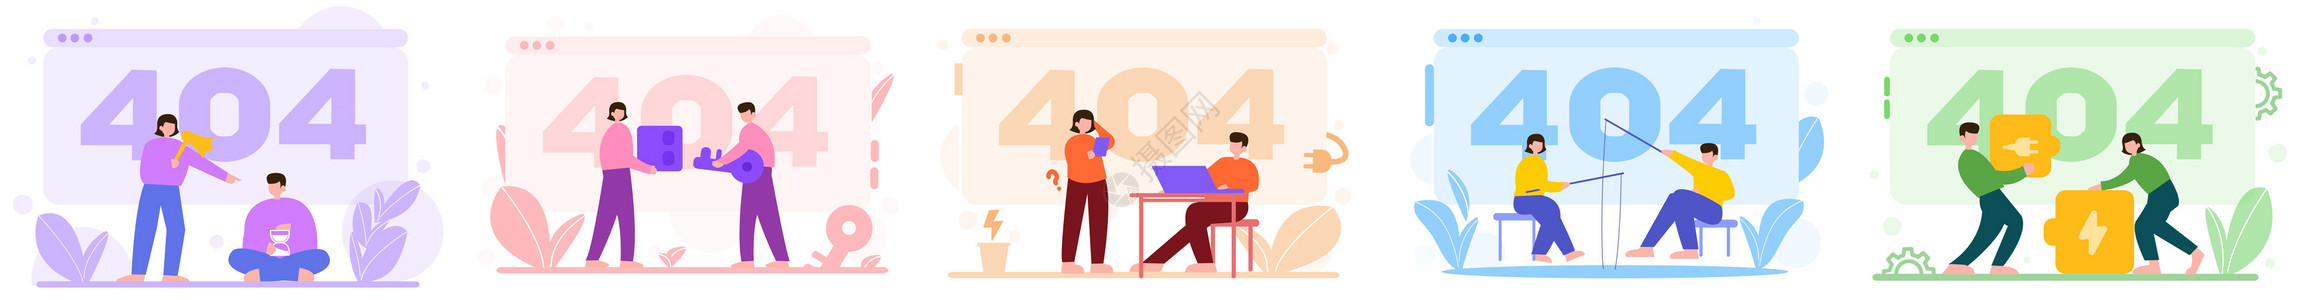 彩色404等待电源催促人物场景插图图片